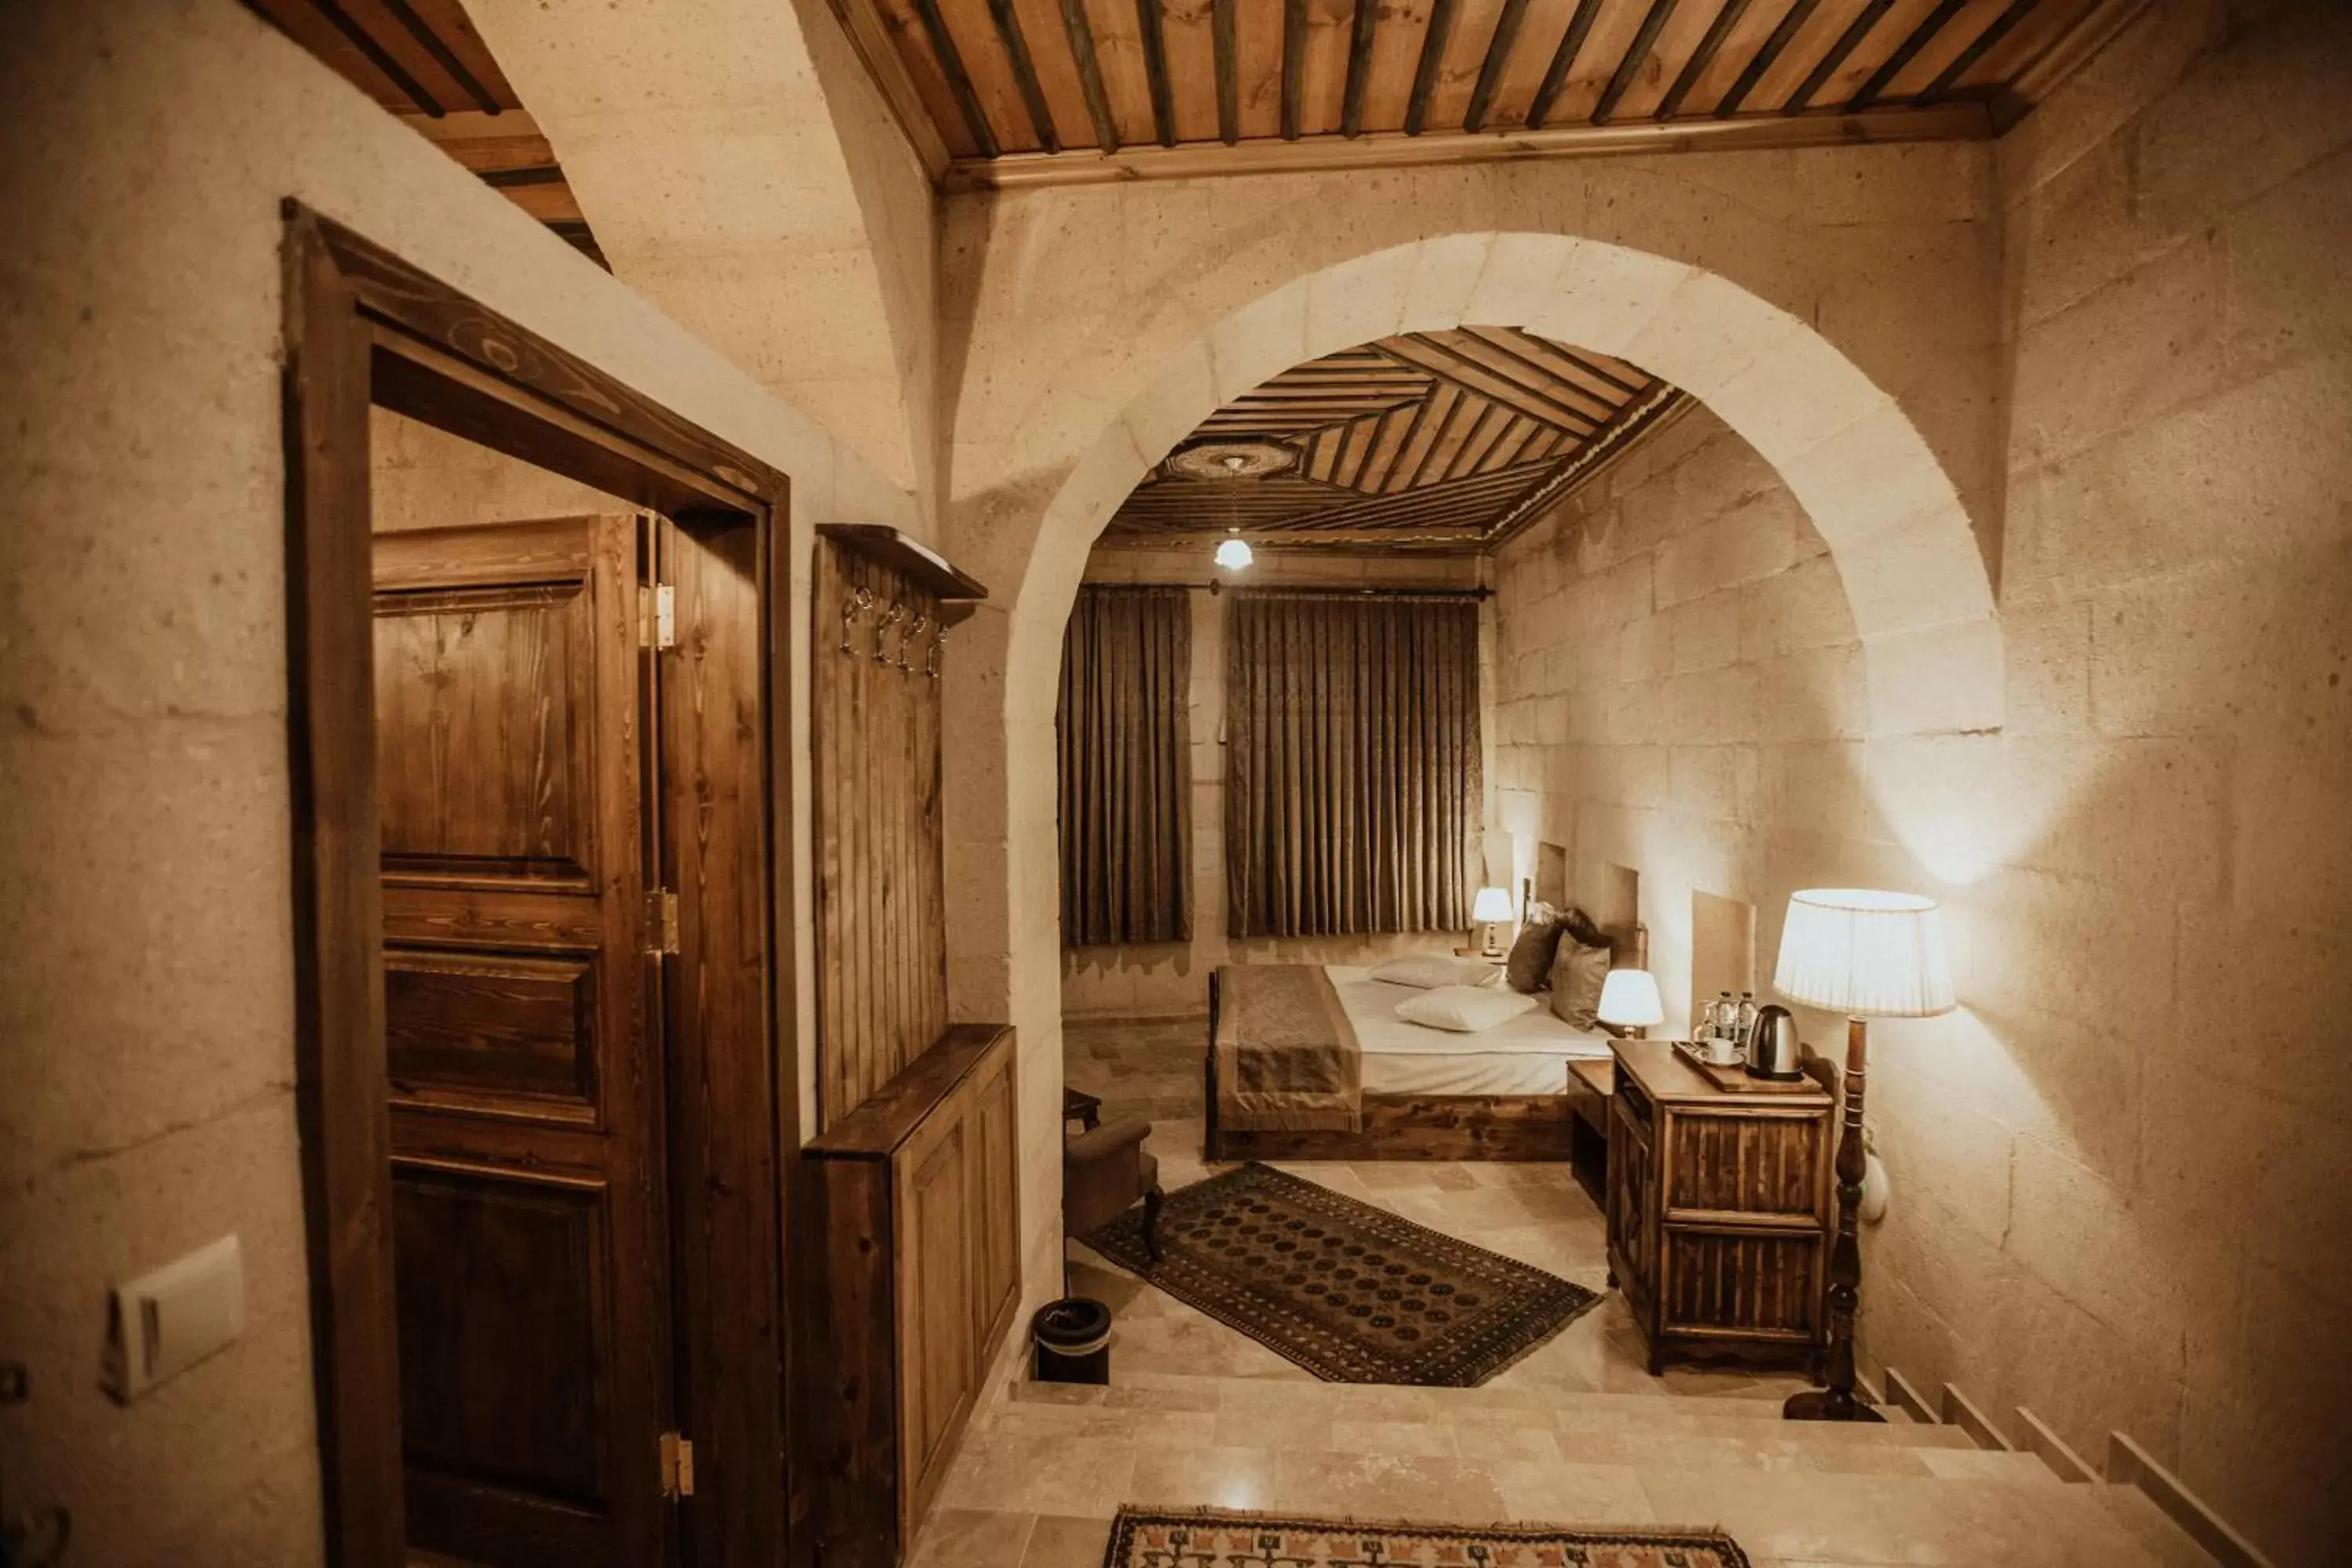 Bedroom in Alia Cave Hotel